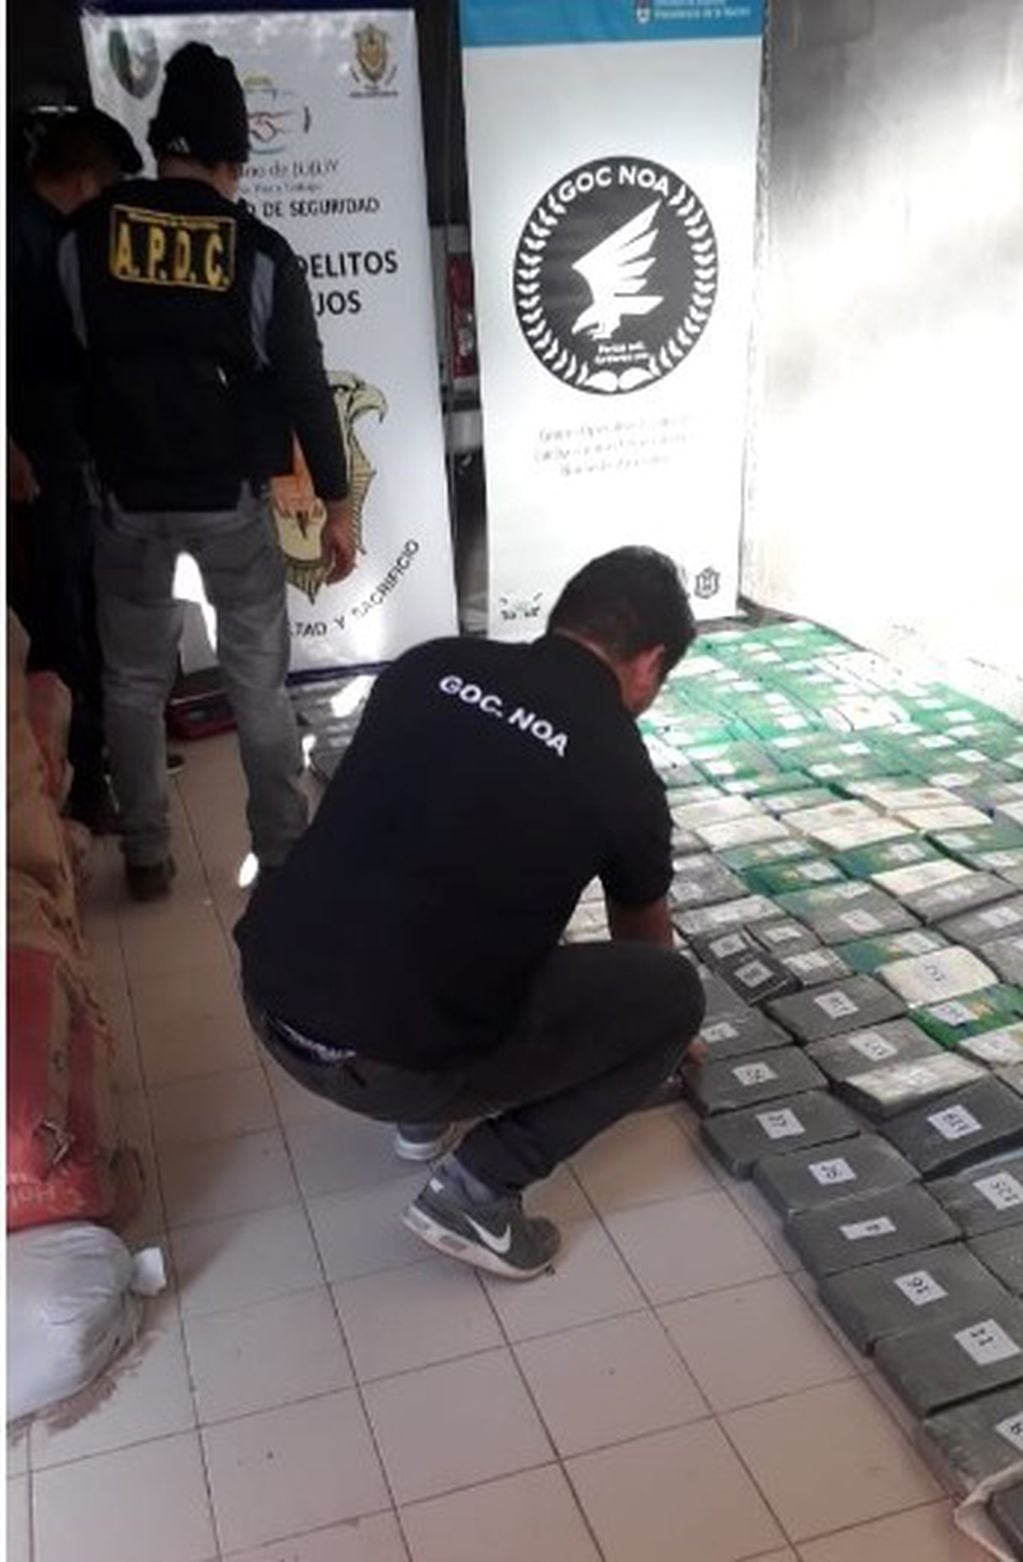 La droga hallada fue valuada en 120 millones de pesos y dos mujeres fueron detenidas.